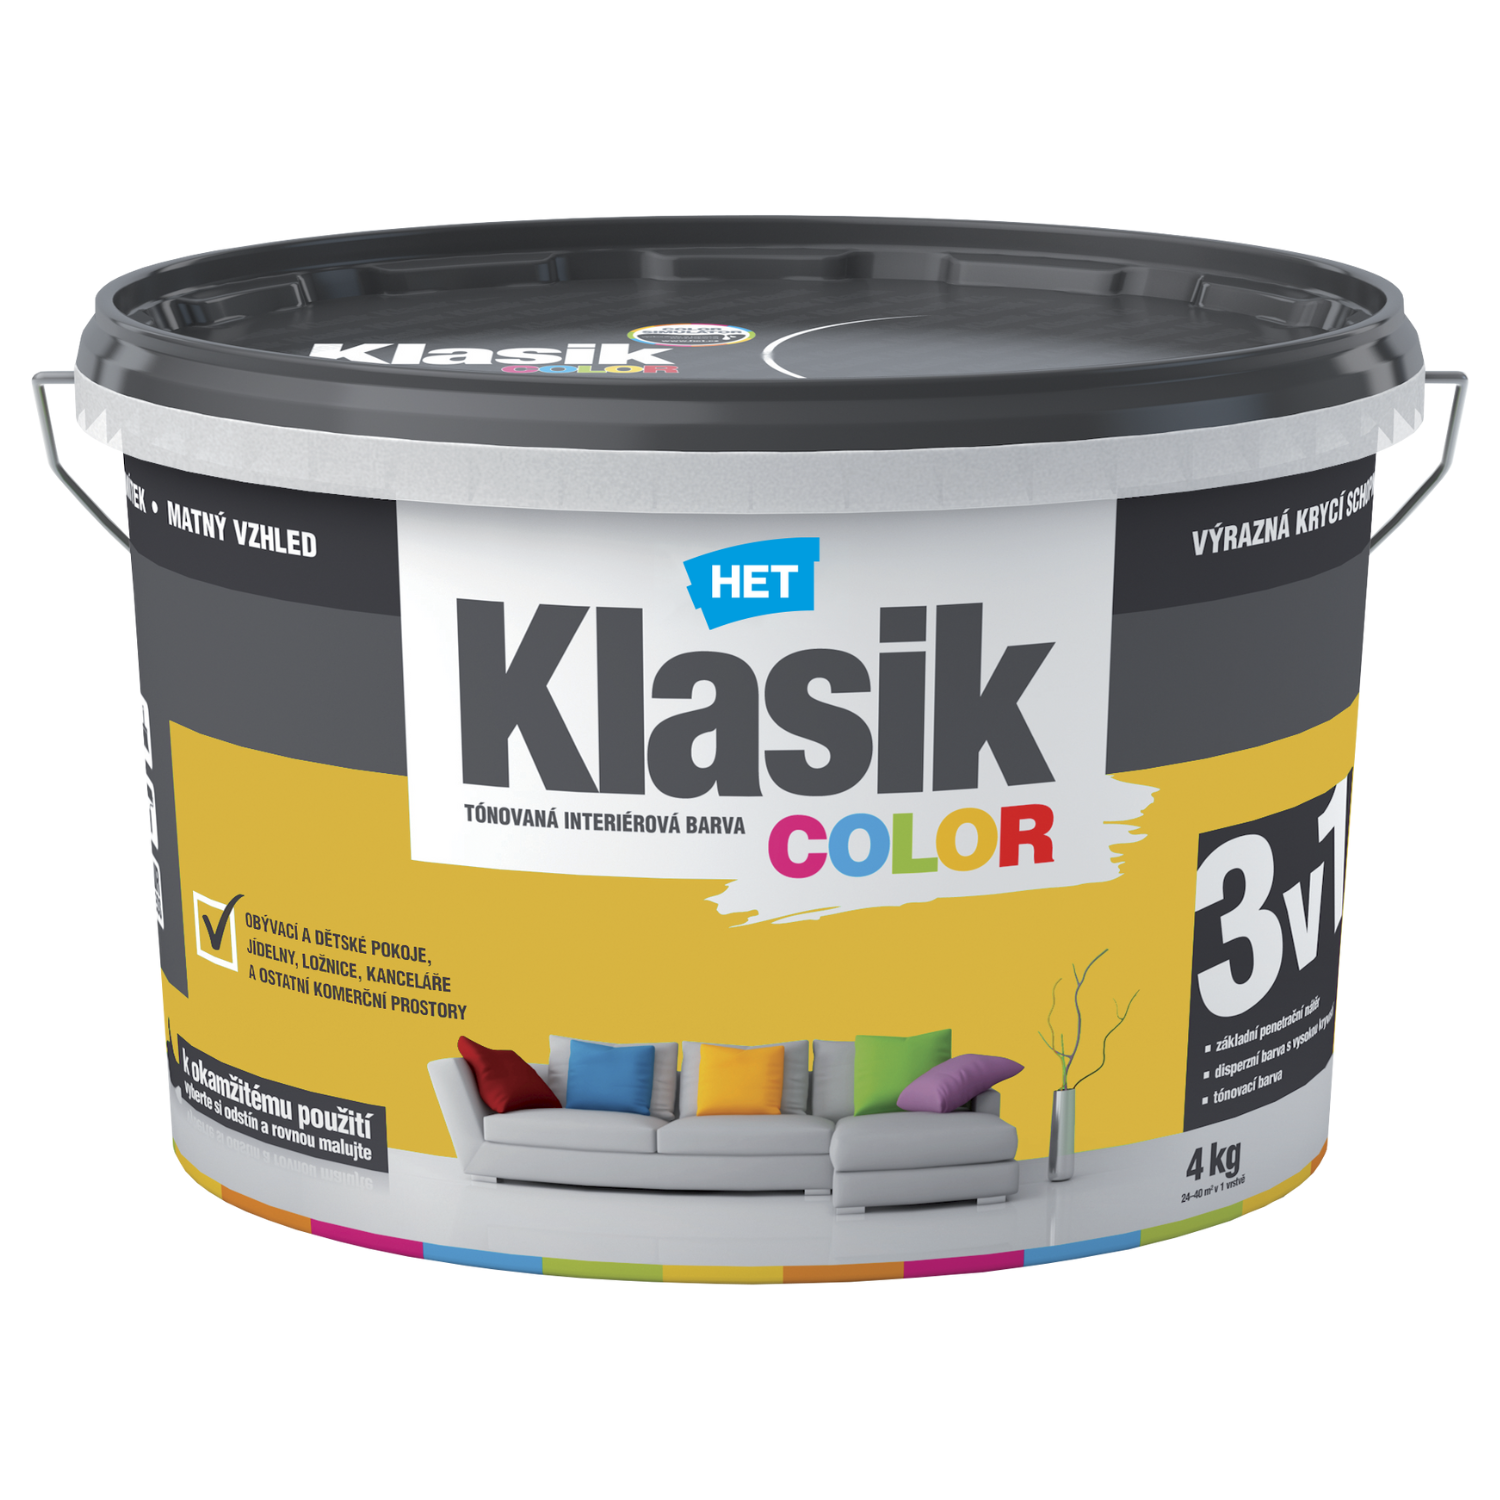 HET Klasik COLOR tónovaná interiérová akrylátová disperzná oteruvzdorná farba 4 kg, KC0618 - žltý citrónový